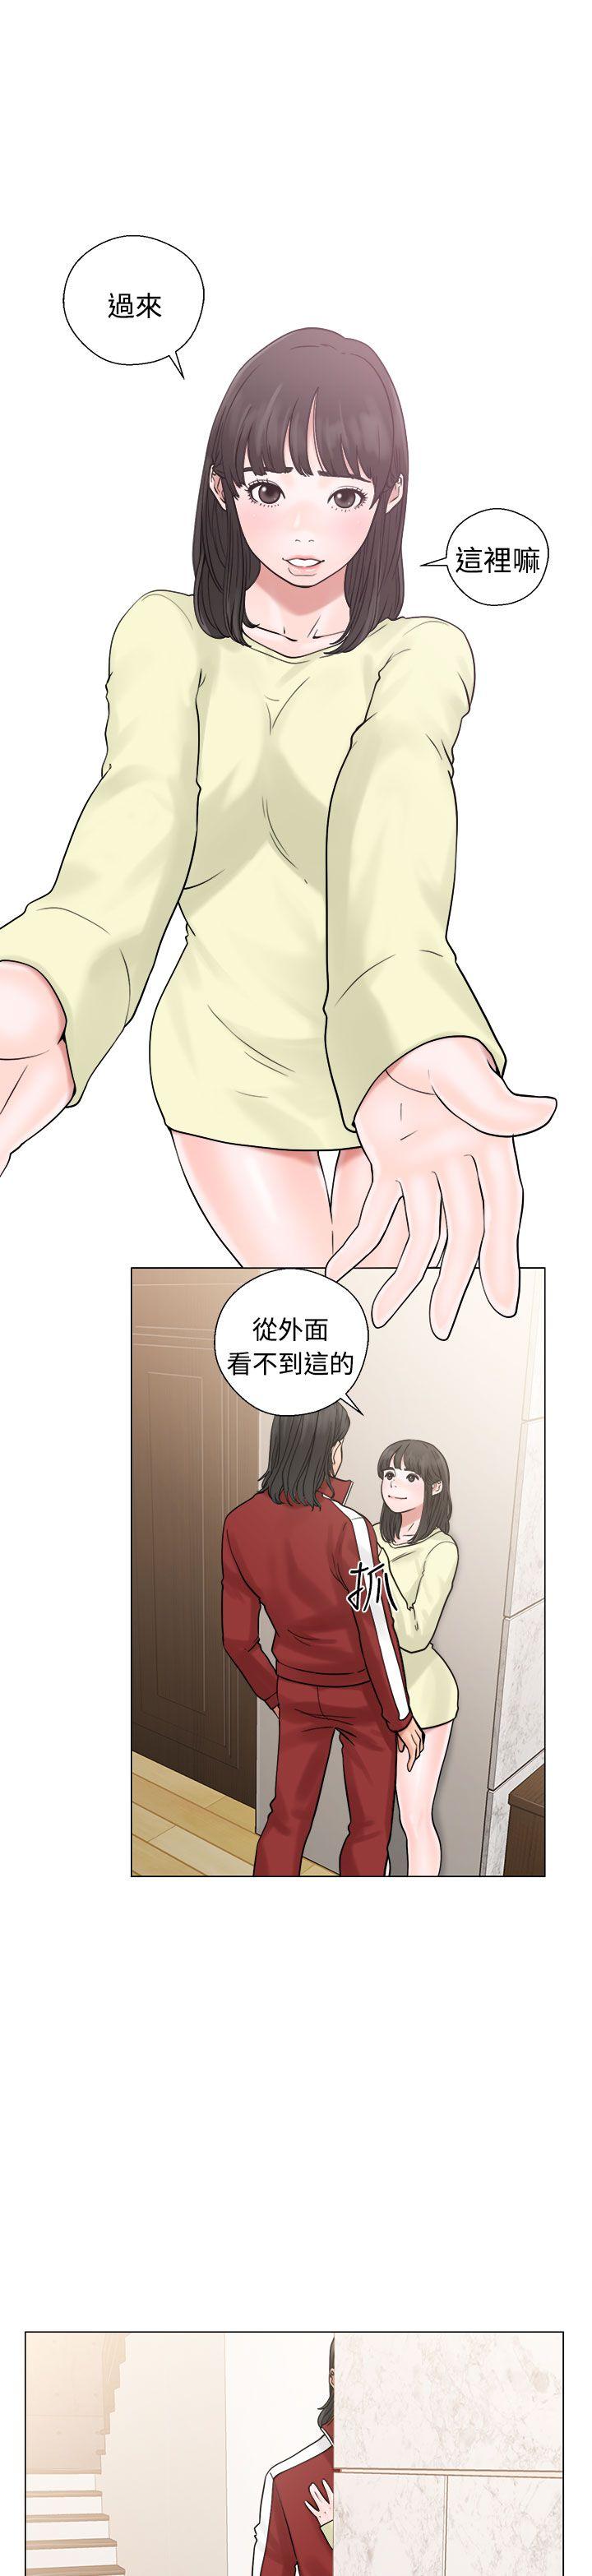 韩国污漫画 解禁:初始的快感 第21话 1